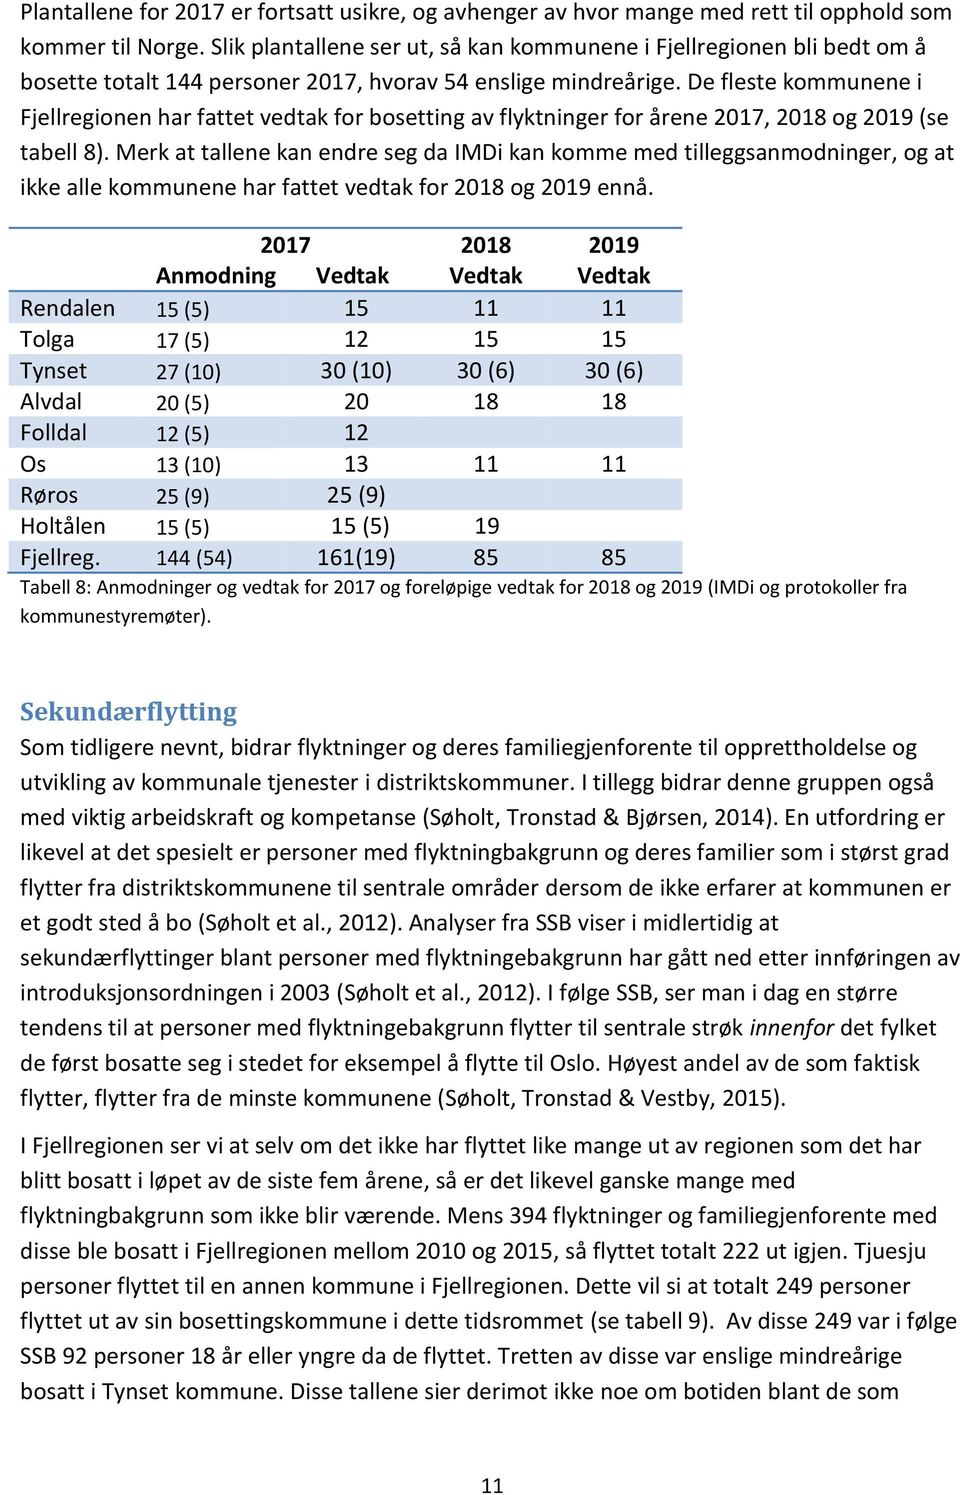 De fleste kommunene i Fjellregionen har fattet vedtak for bosetting av flyktninger for årene 2017, 2018 og 2019 (se tabell 8).